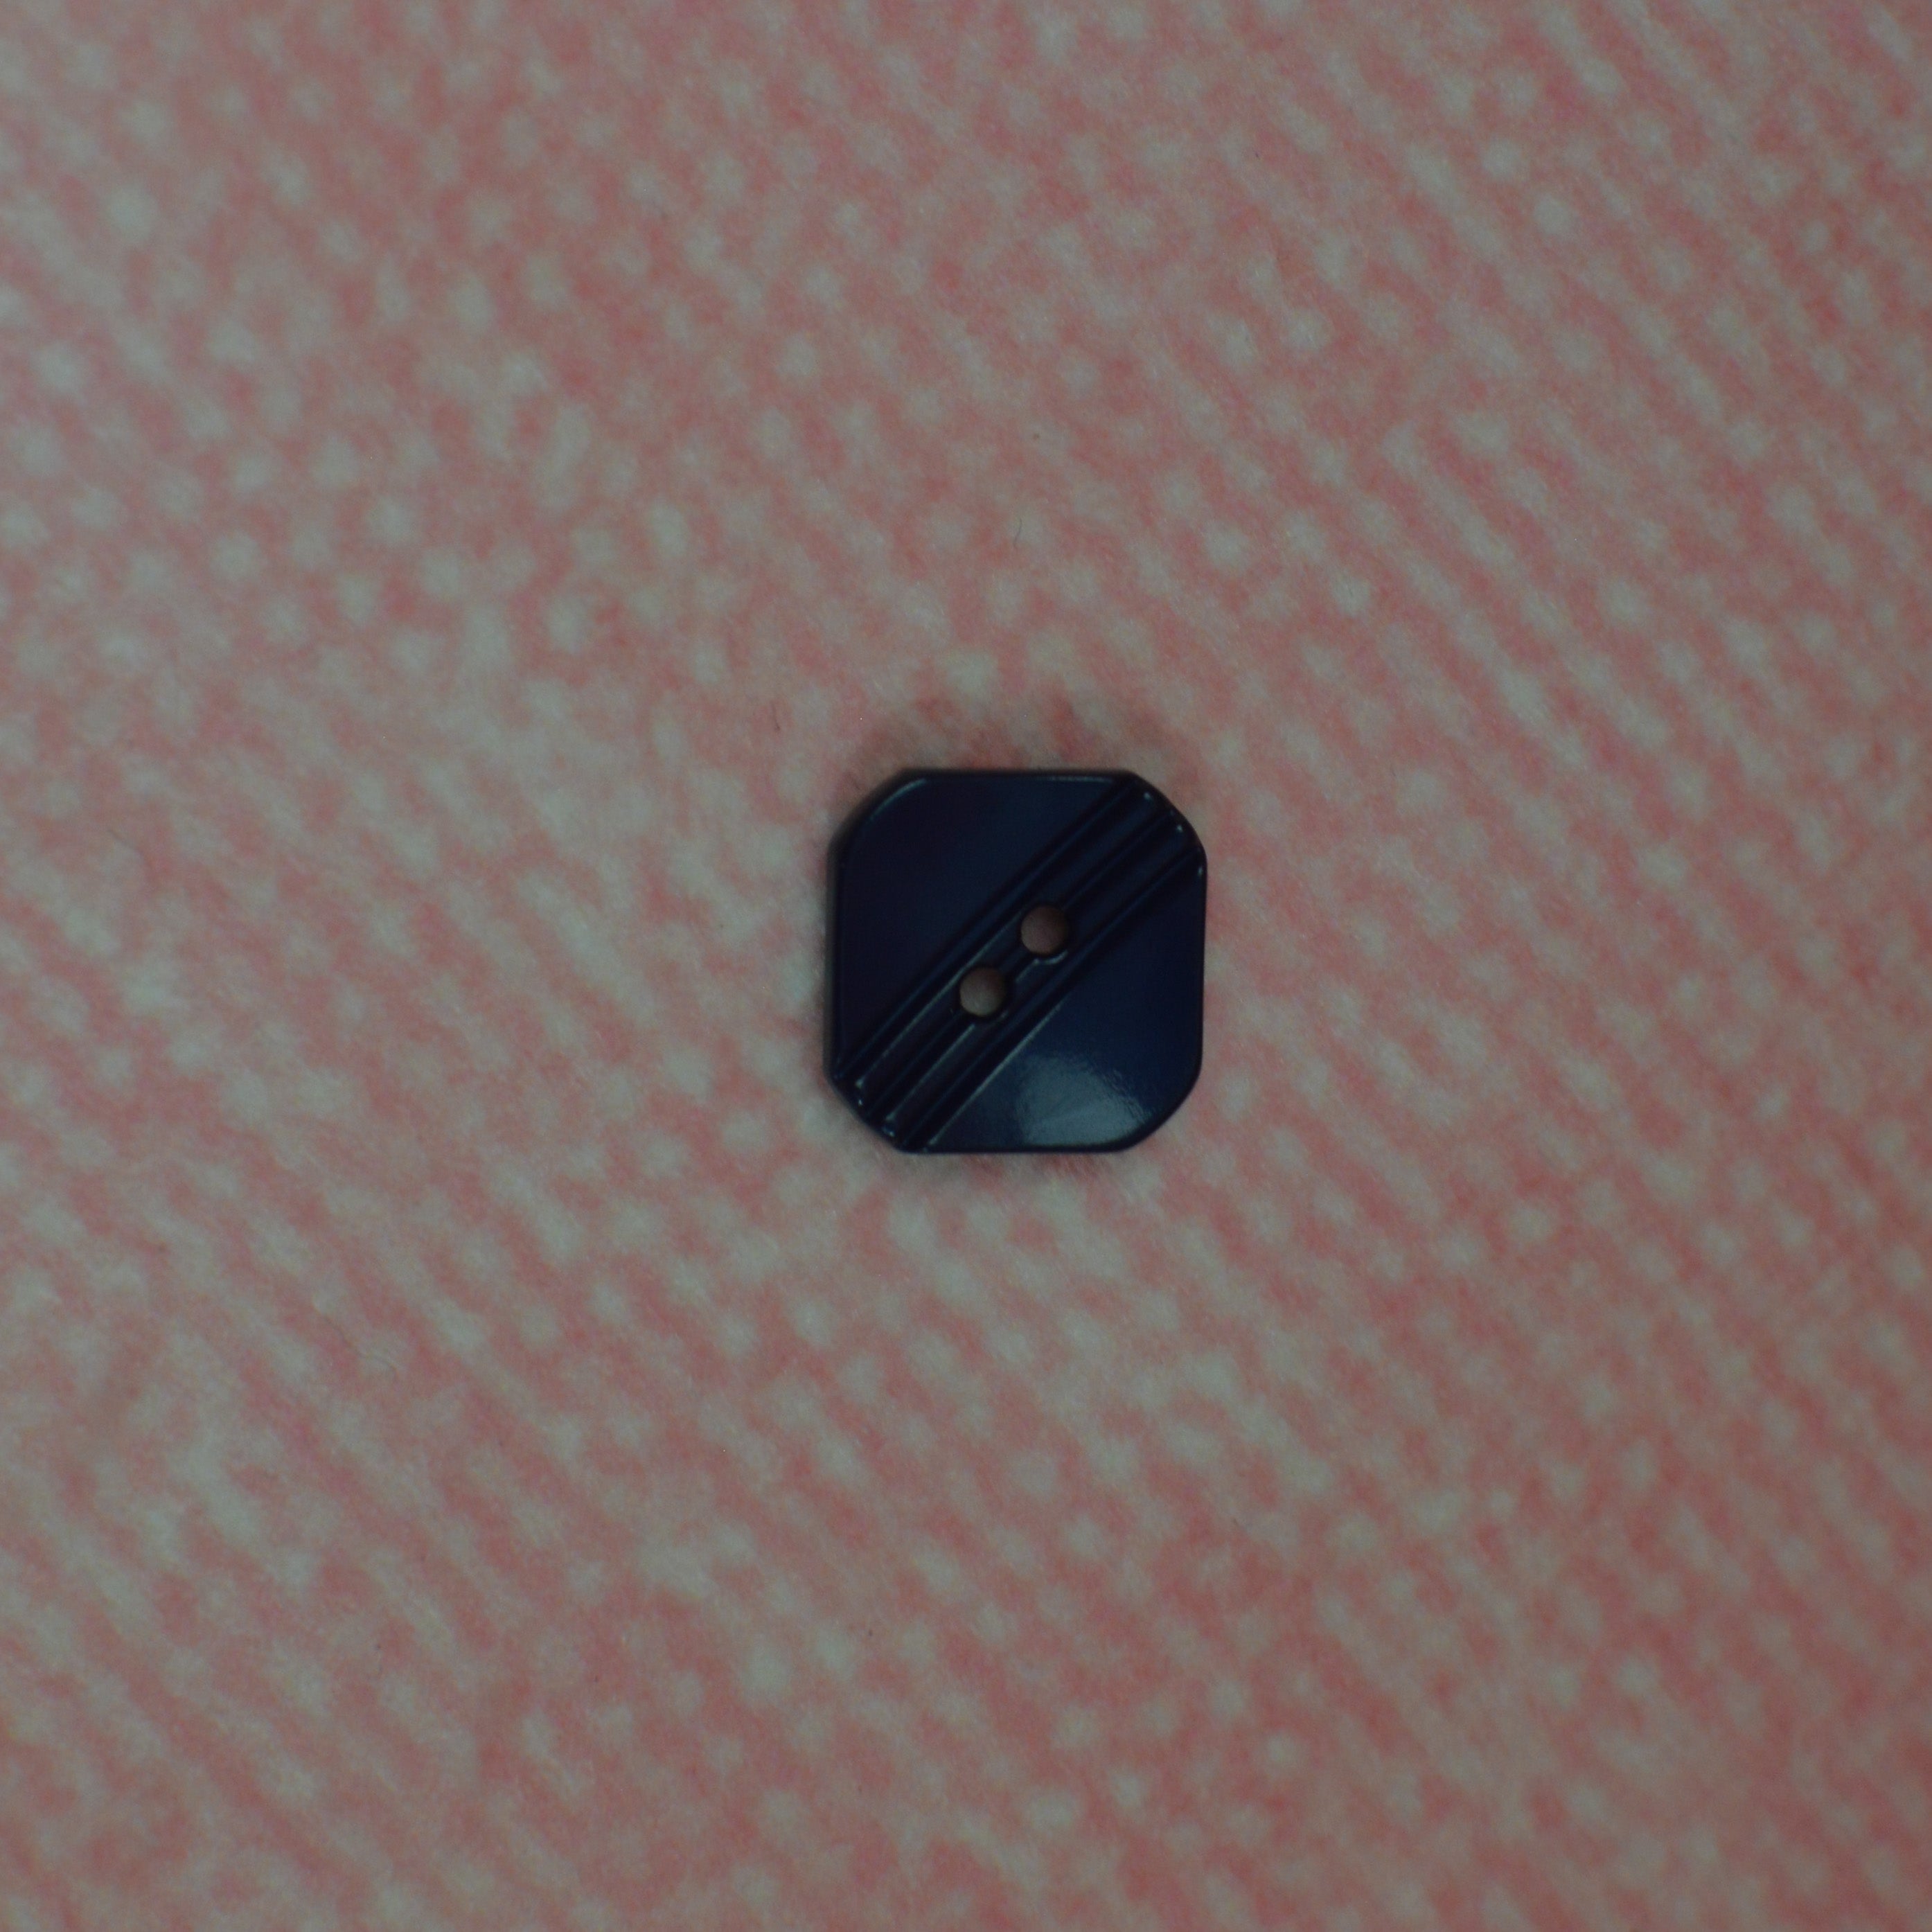 Kunststoffknopf - 15mm - dunkelblau eckig glänzend Knopf poshpinks